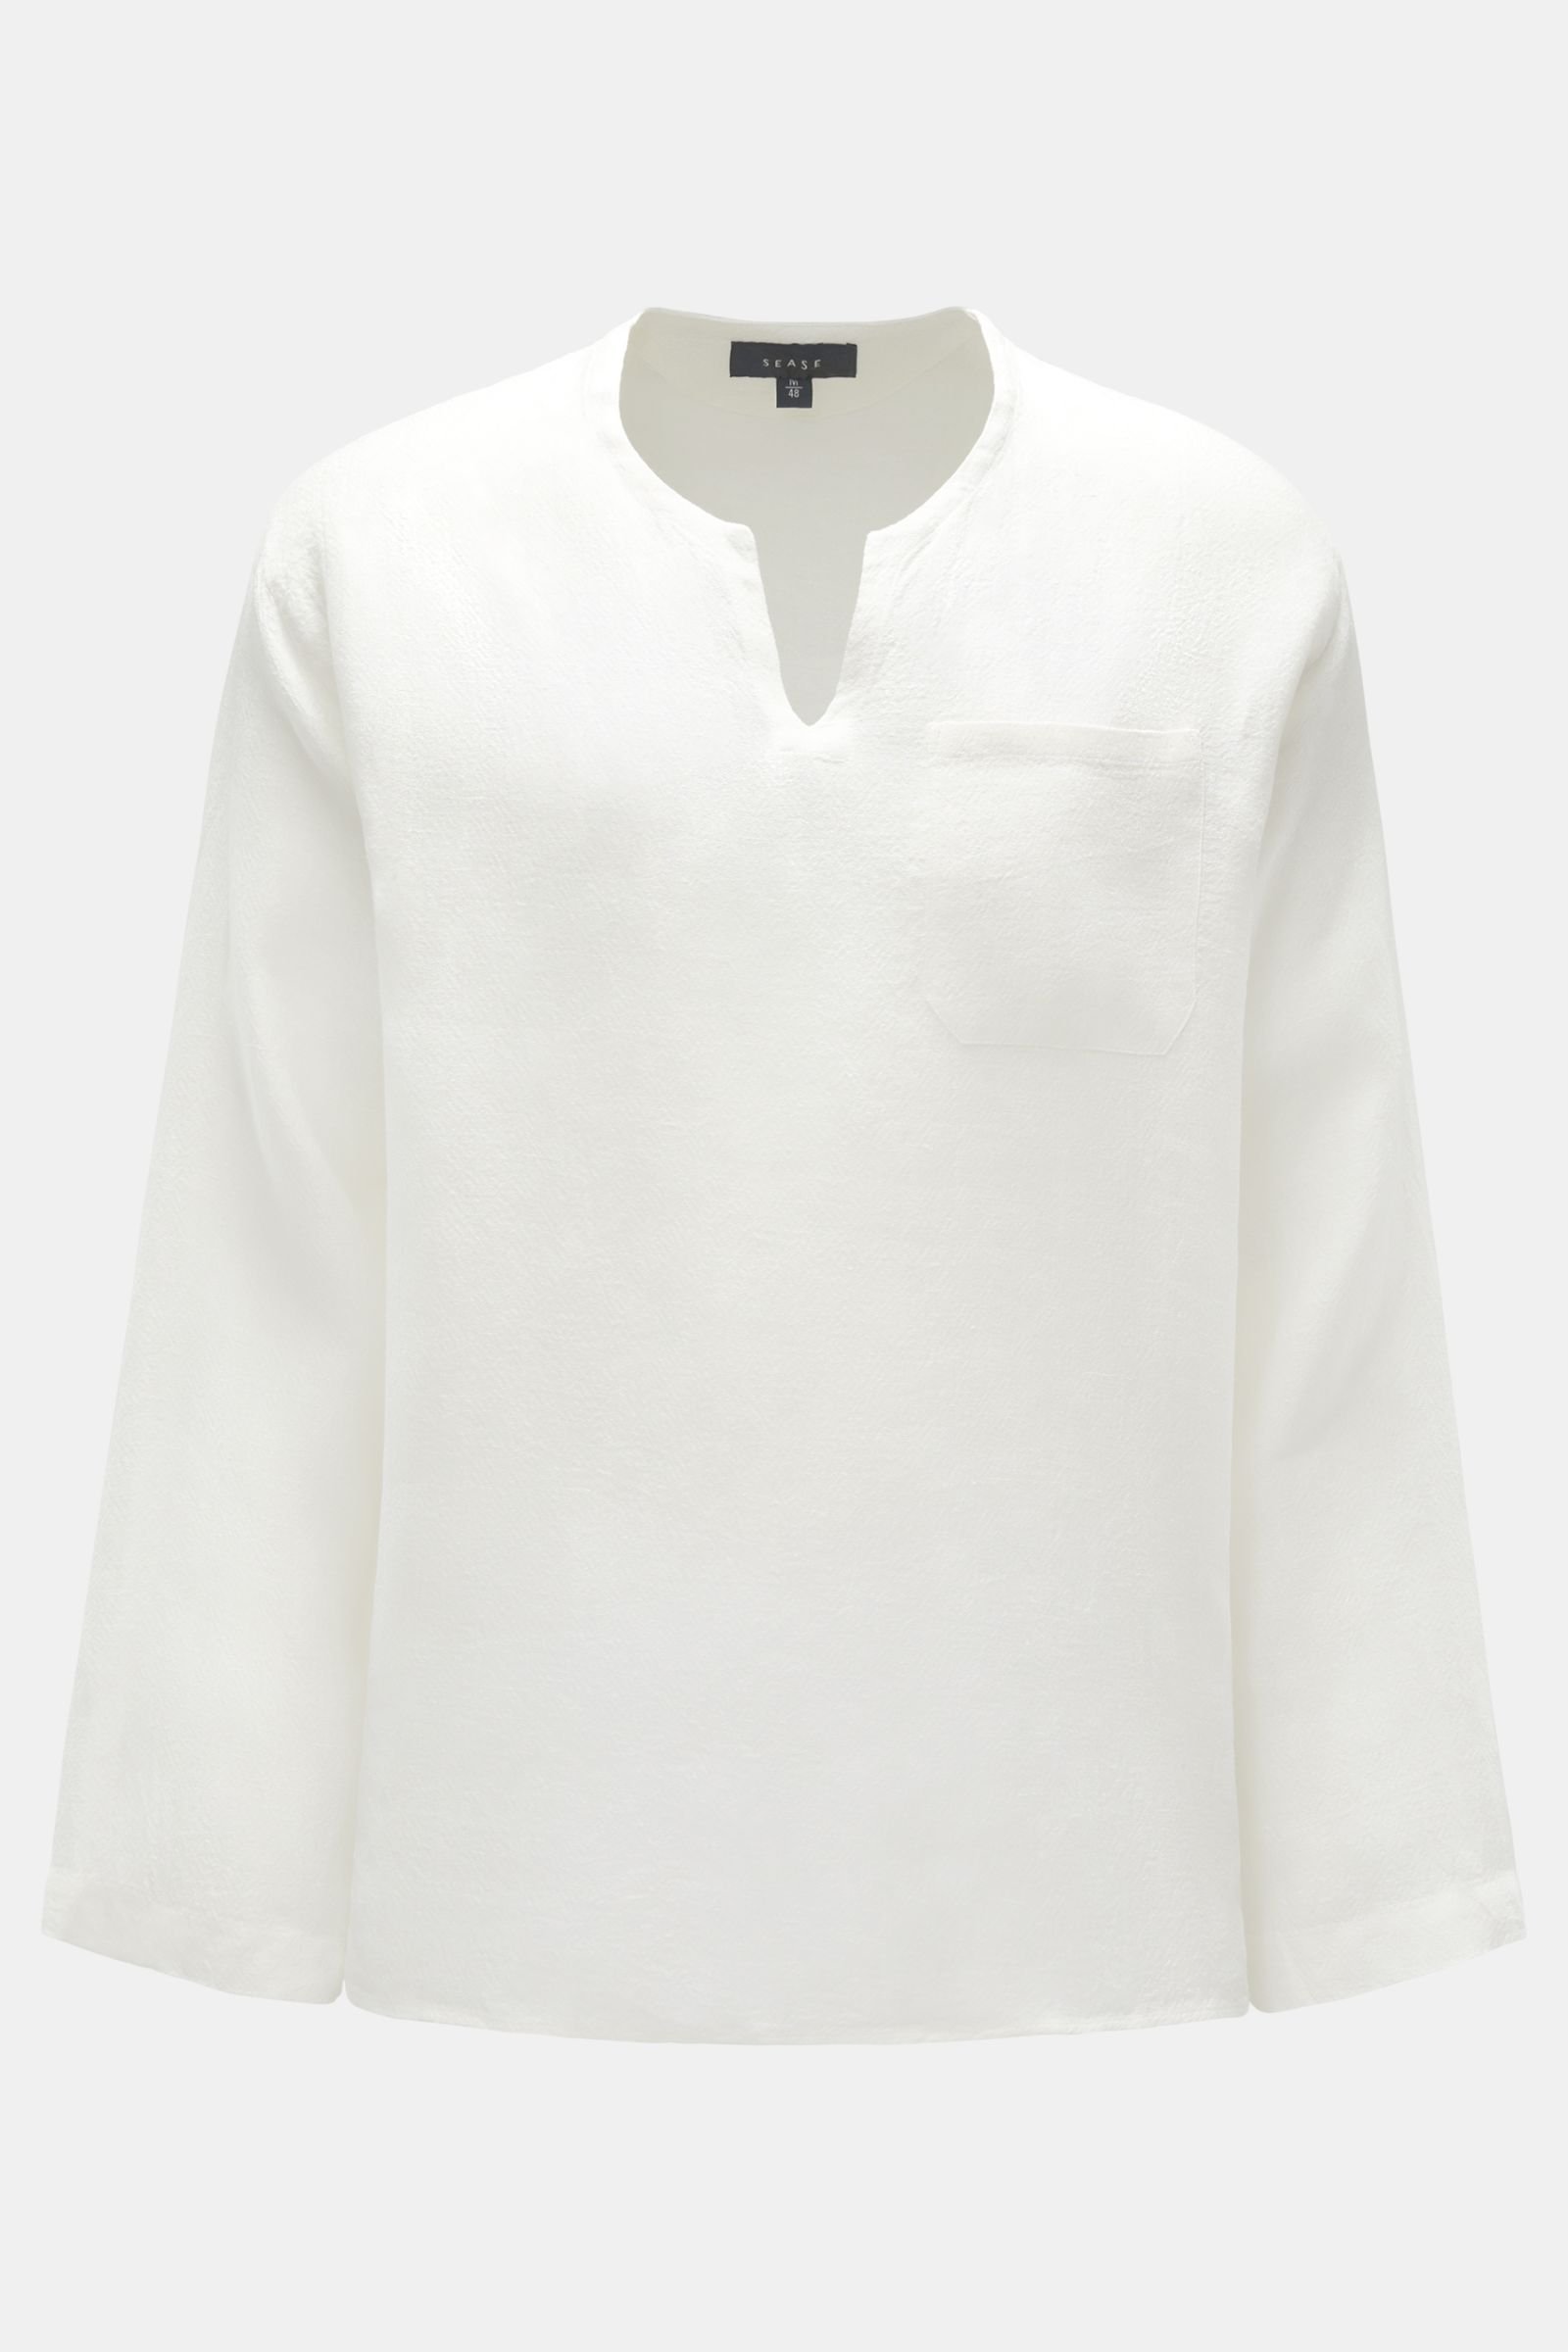 Leinen Popover-Hemd offwhite gemustert